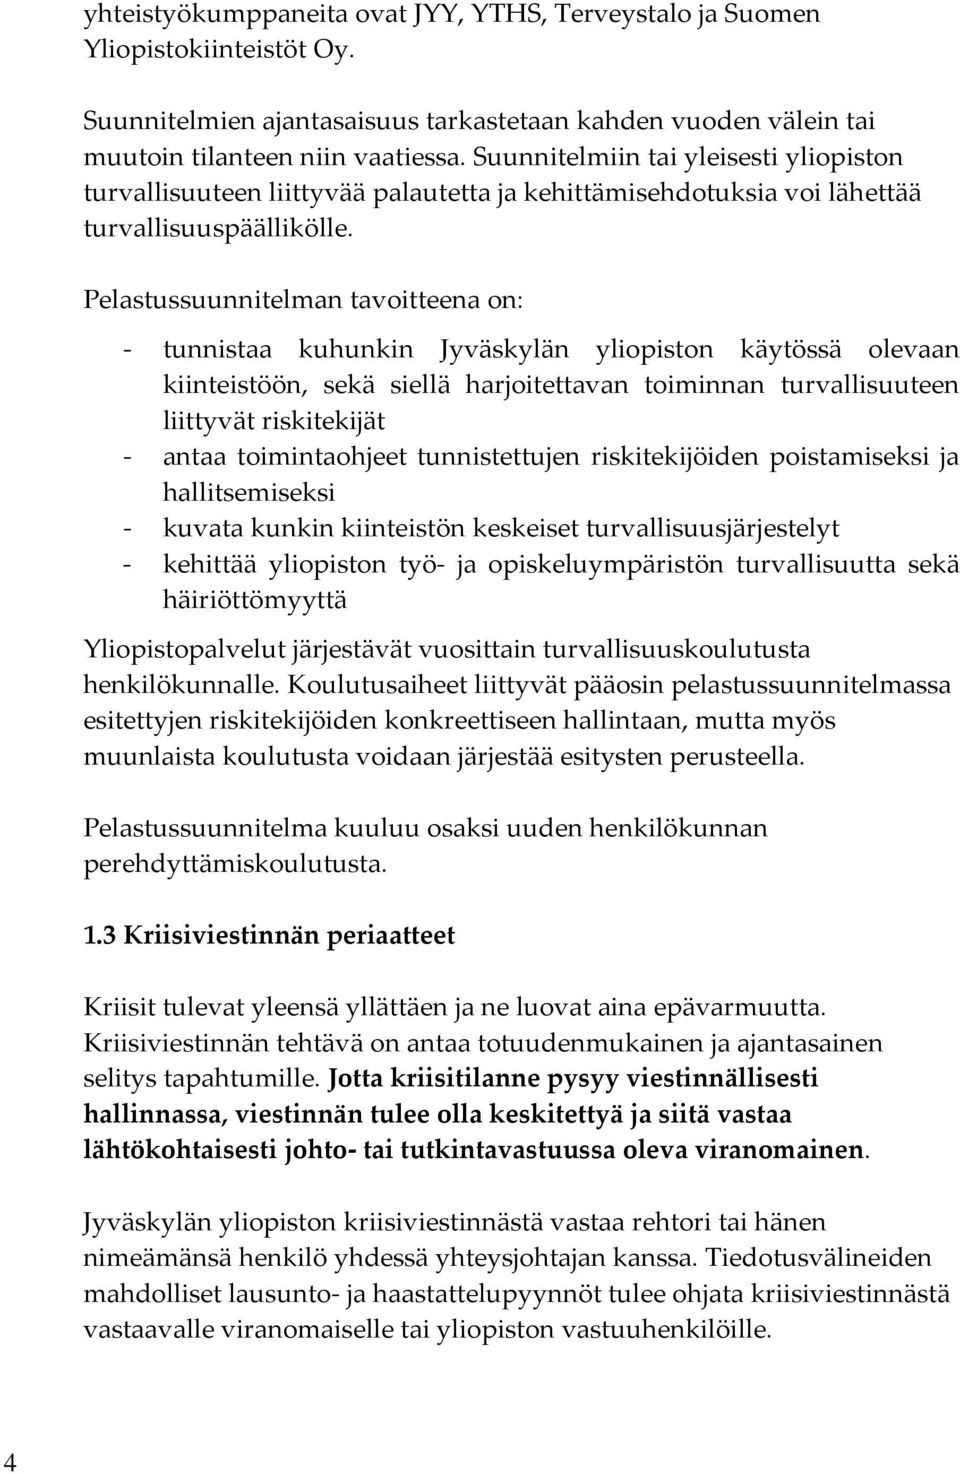 Pelastussuunnitelman tavoitteena on: - tunnistaa kuhunkin Jyväskylän yliopiston käytössä olevaan kiinteistöön, sekä siellä harjoitettavan toiminnan turvallisuuteen liittyvät riskitekijät - antaa